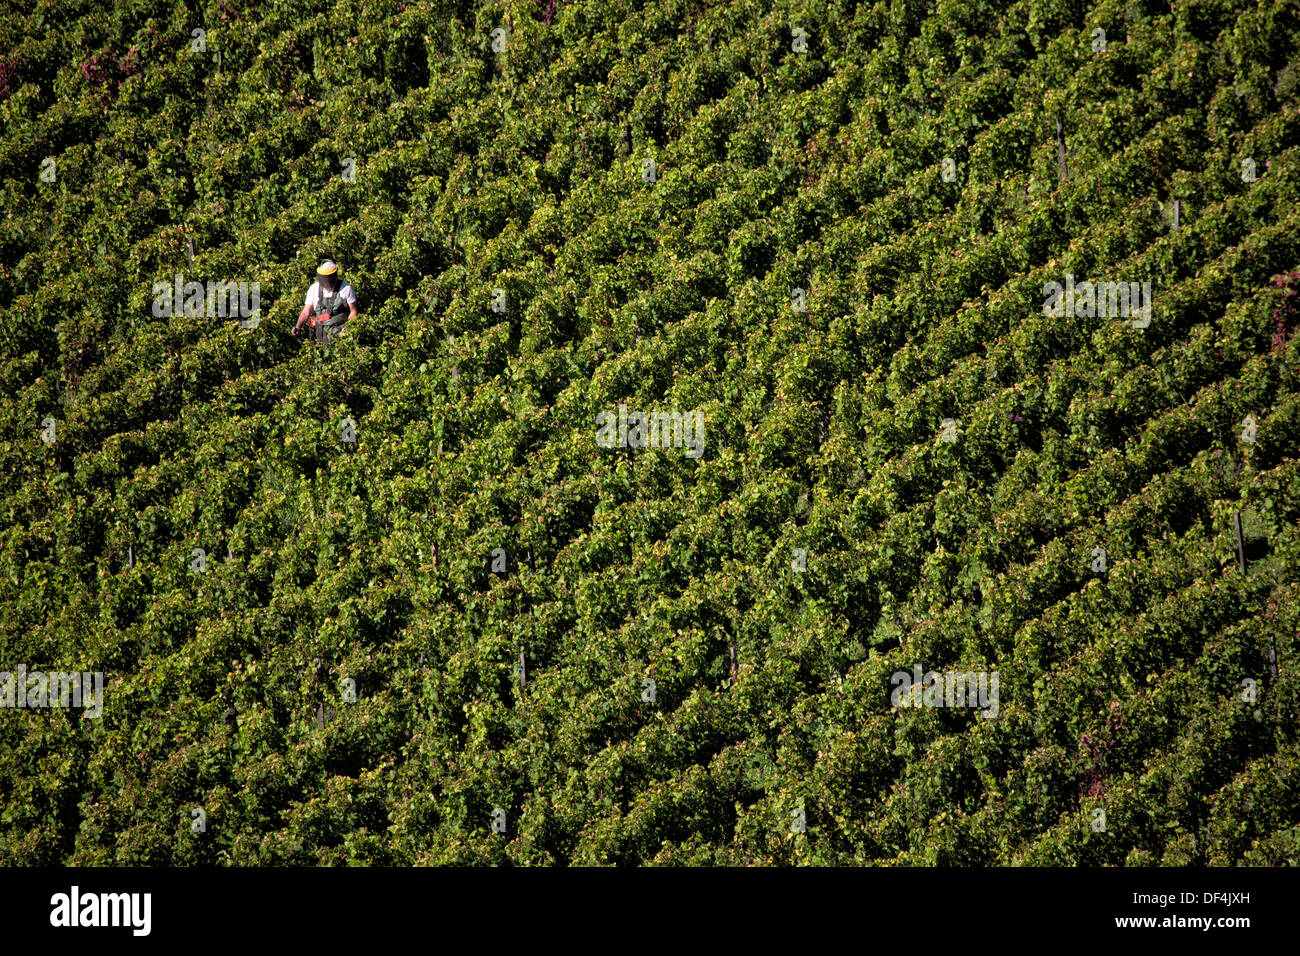 Man tending vines  in a vineyard in Burgundy France Stock Photo